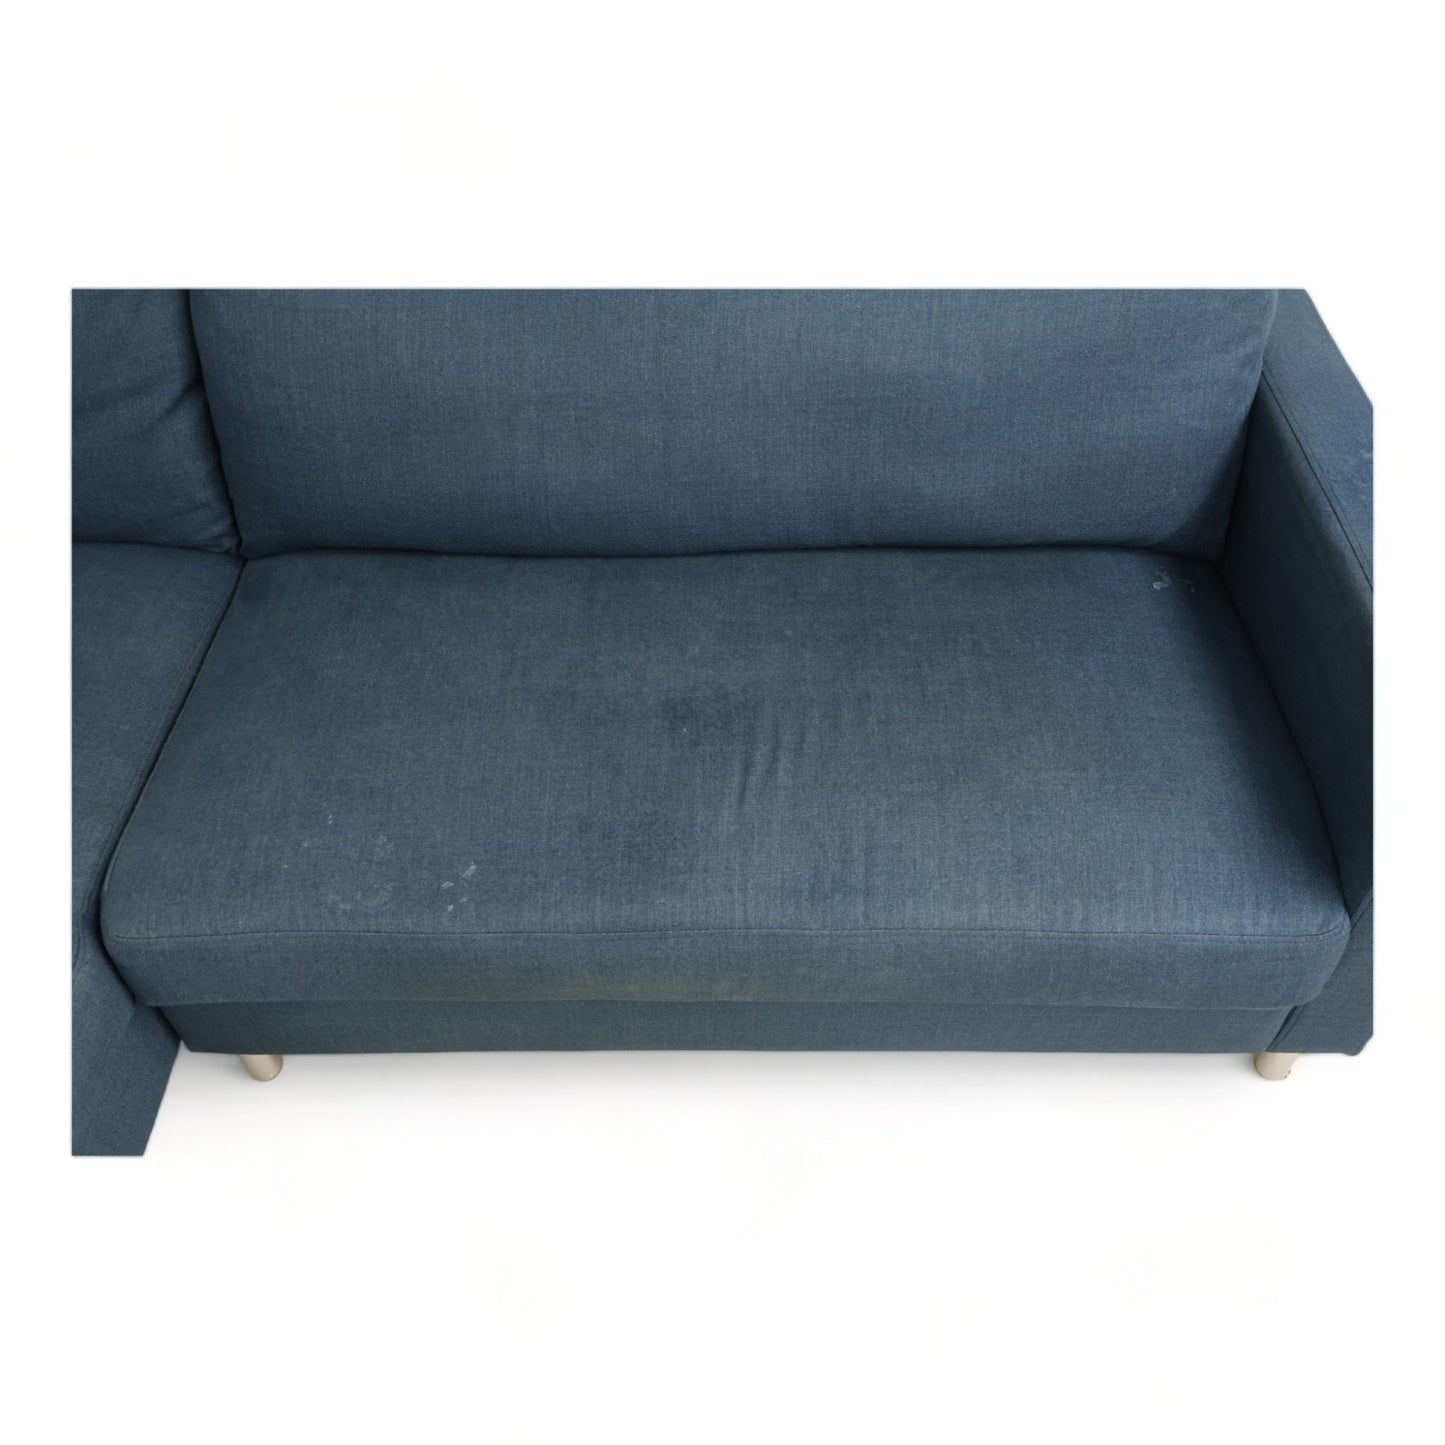 Nyrenset | Blå Sofa med sjeselong